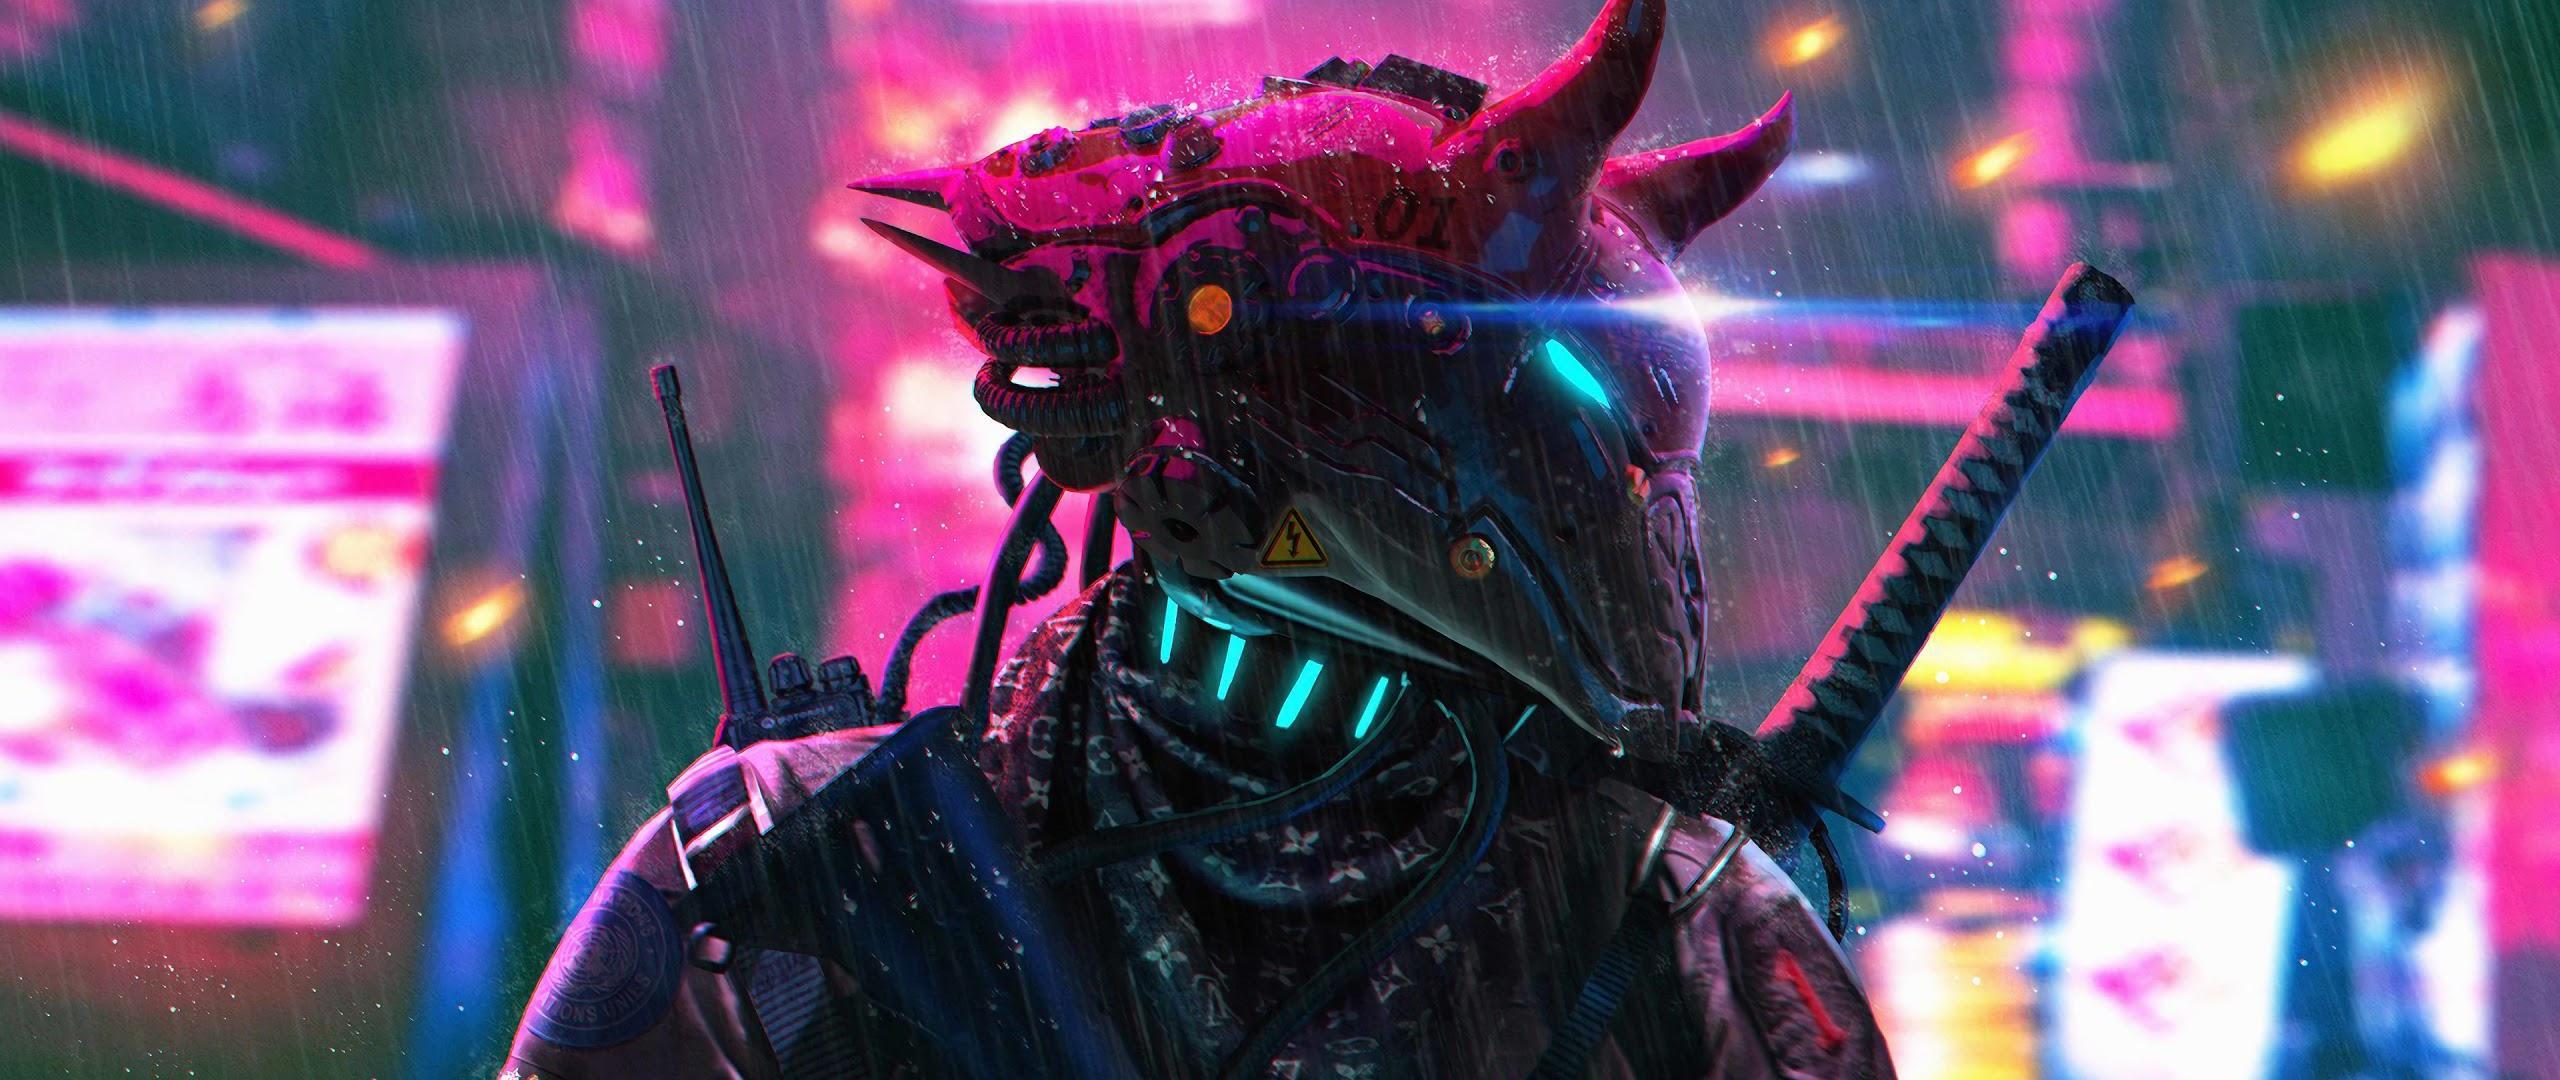 Cyberpunk Ultrawide Wallpapers - Top Free Cyberpunk Ultrawide